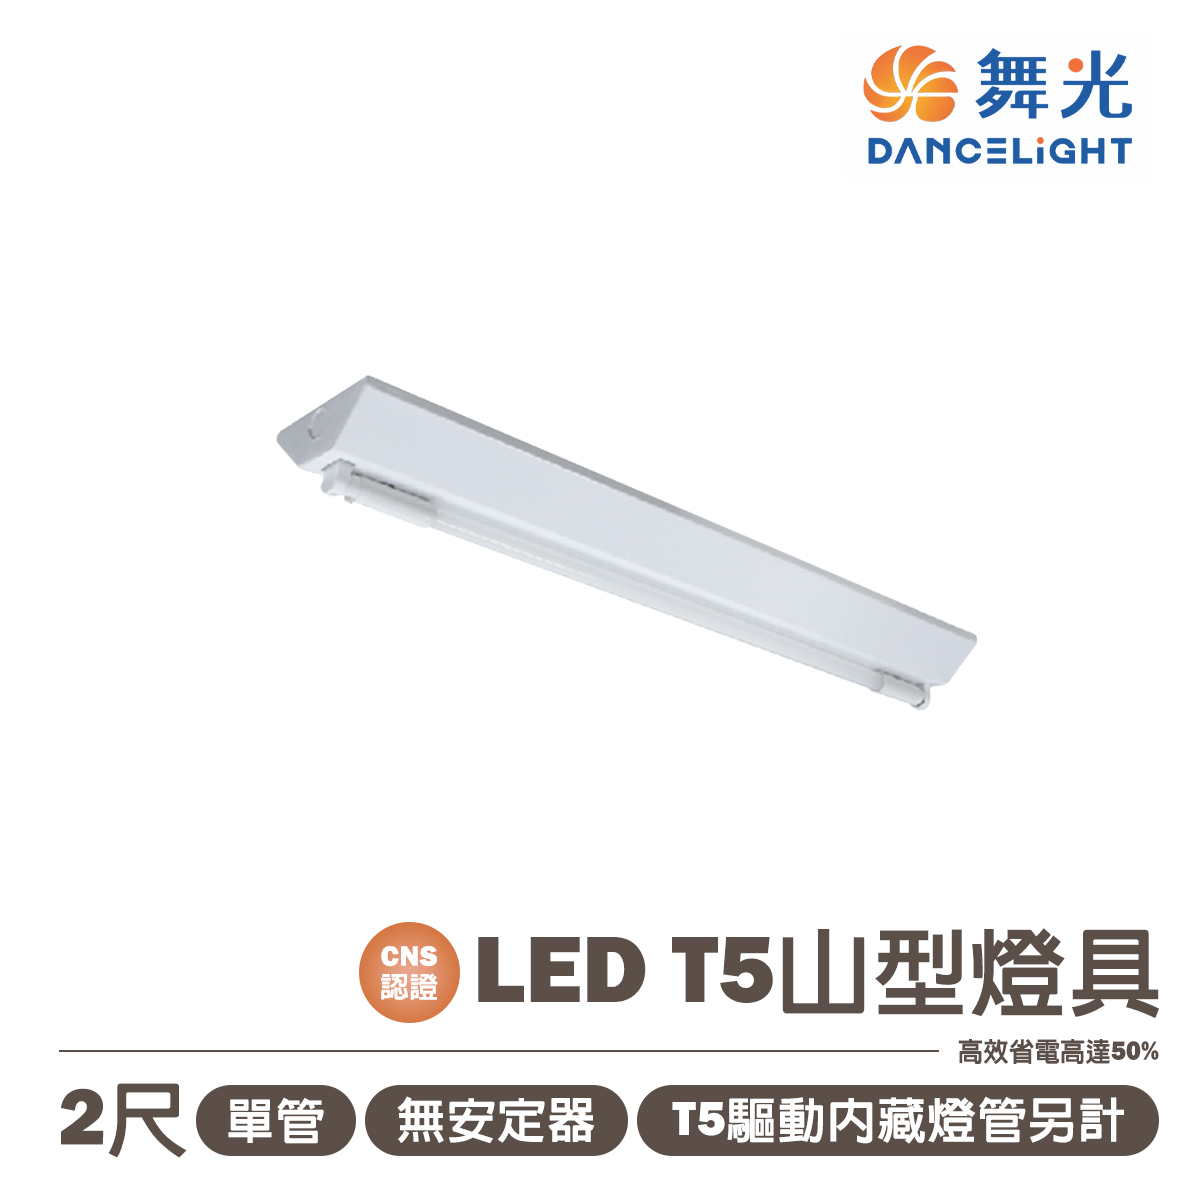 【舞光】LED T5 燈管式山形燈具(免安定器) 附燈管 全電壓